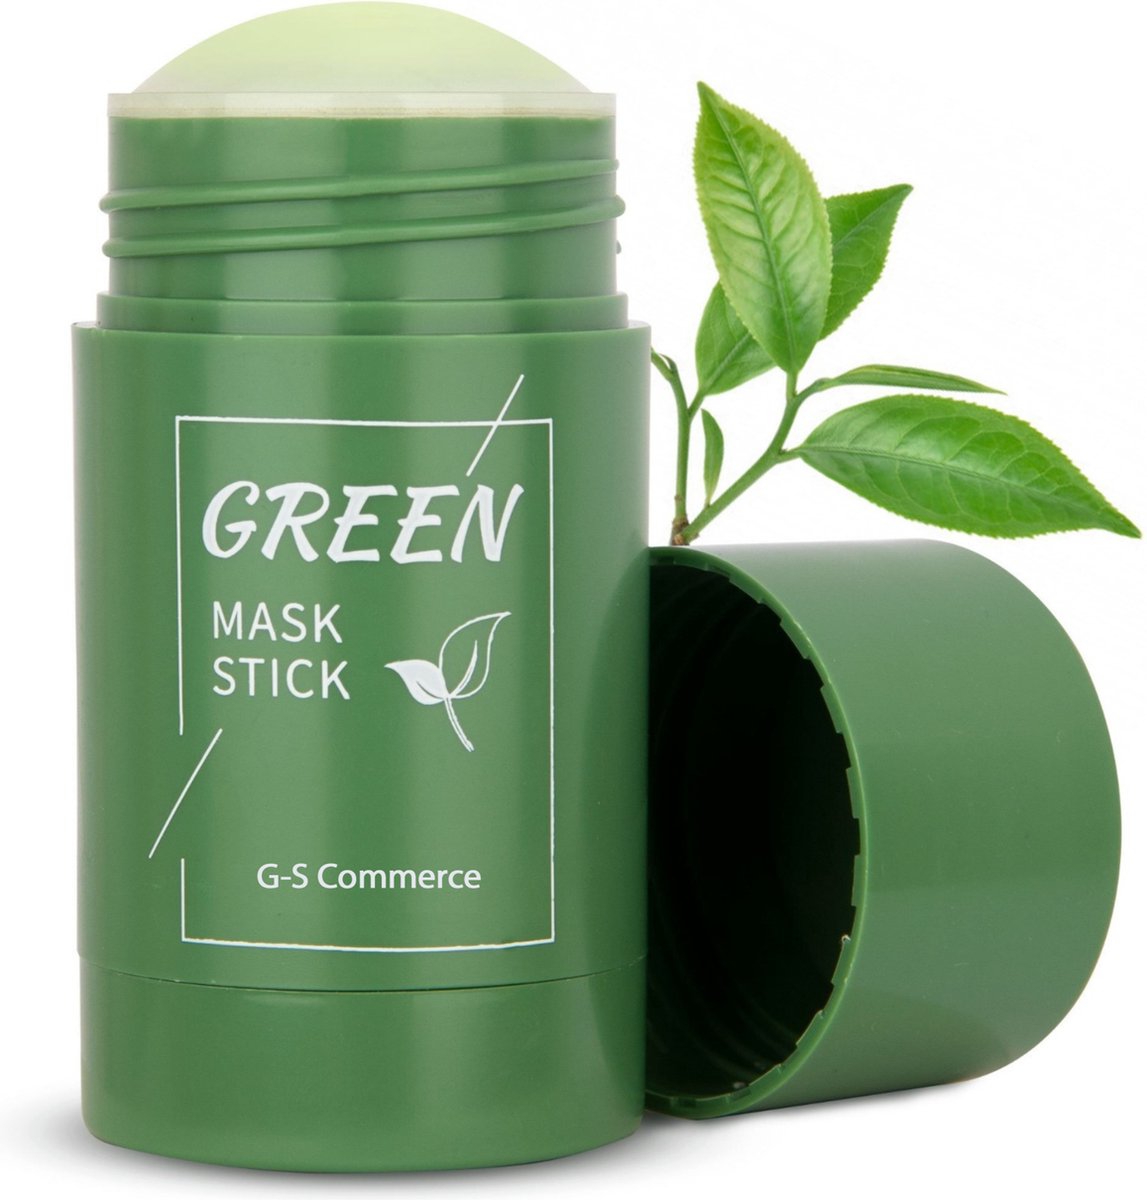 Green mask stick | Gezichtsmasker | Mee eters verwijderen | Blackhead remover | De originele green mask stick | Groene thee | Huidverzorging |